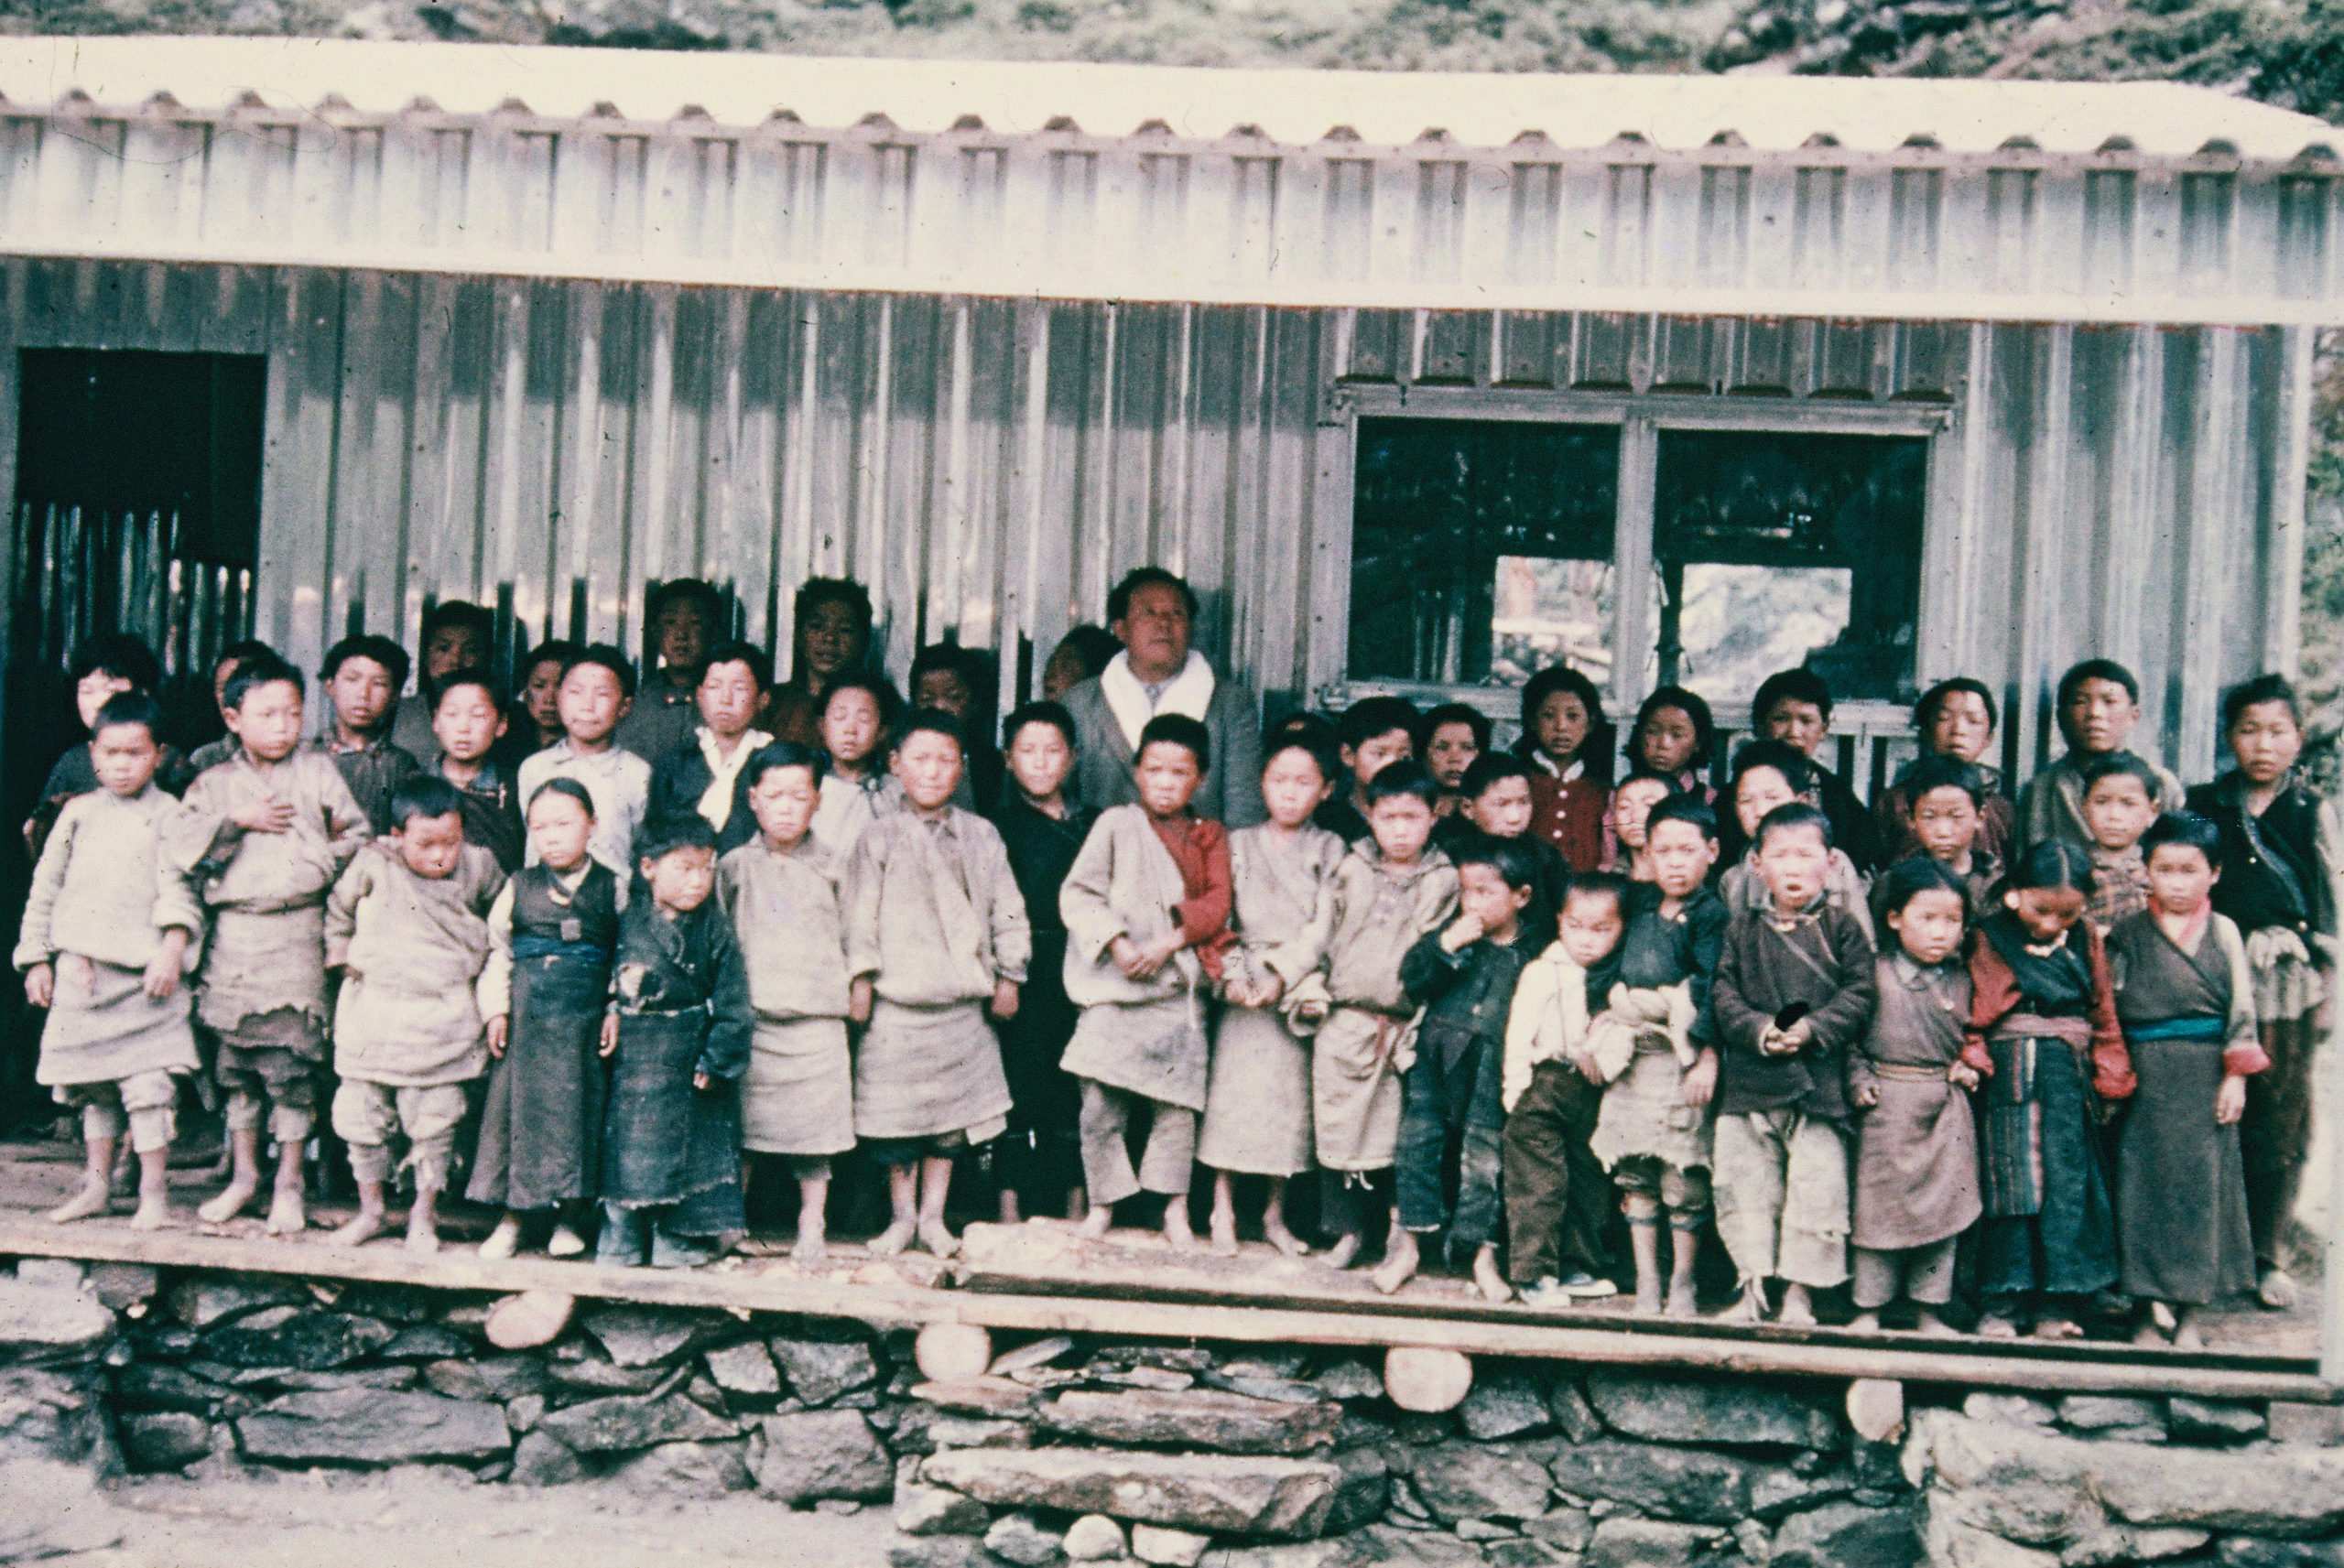 Khumjung school in 1961